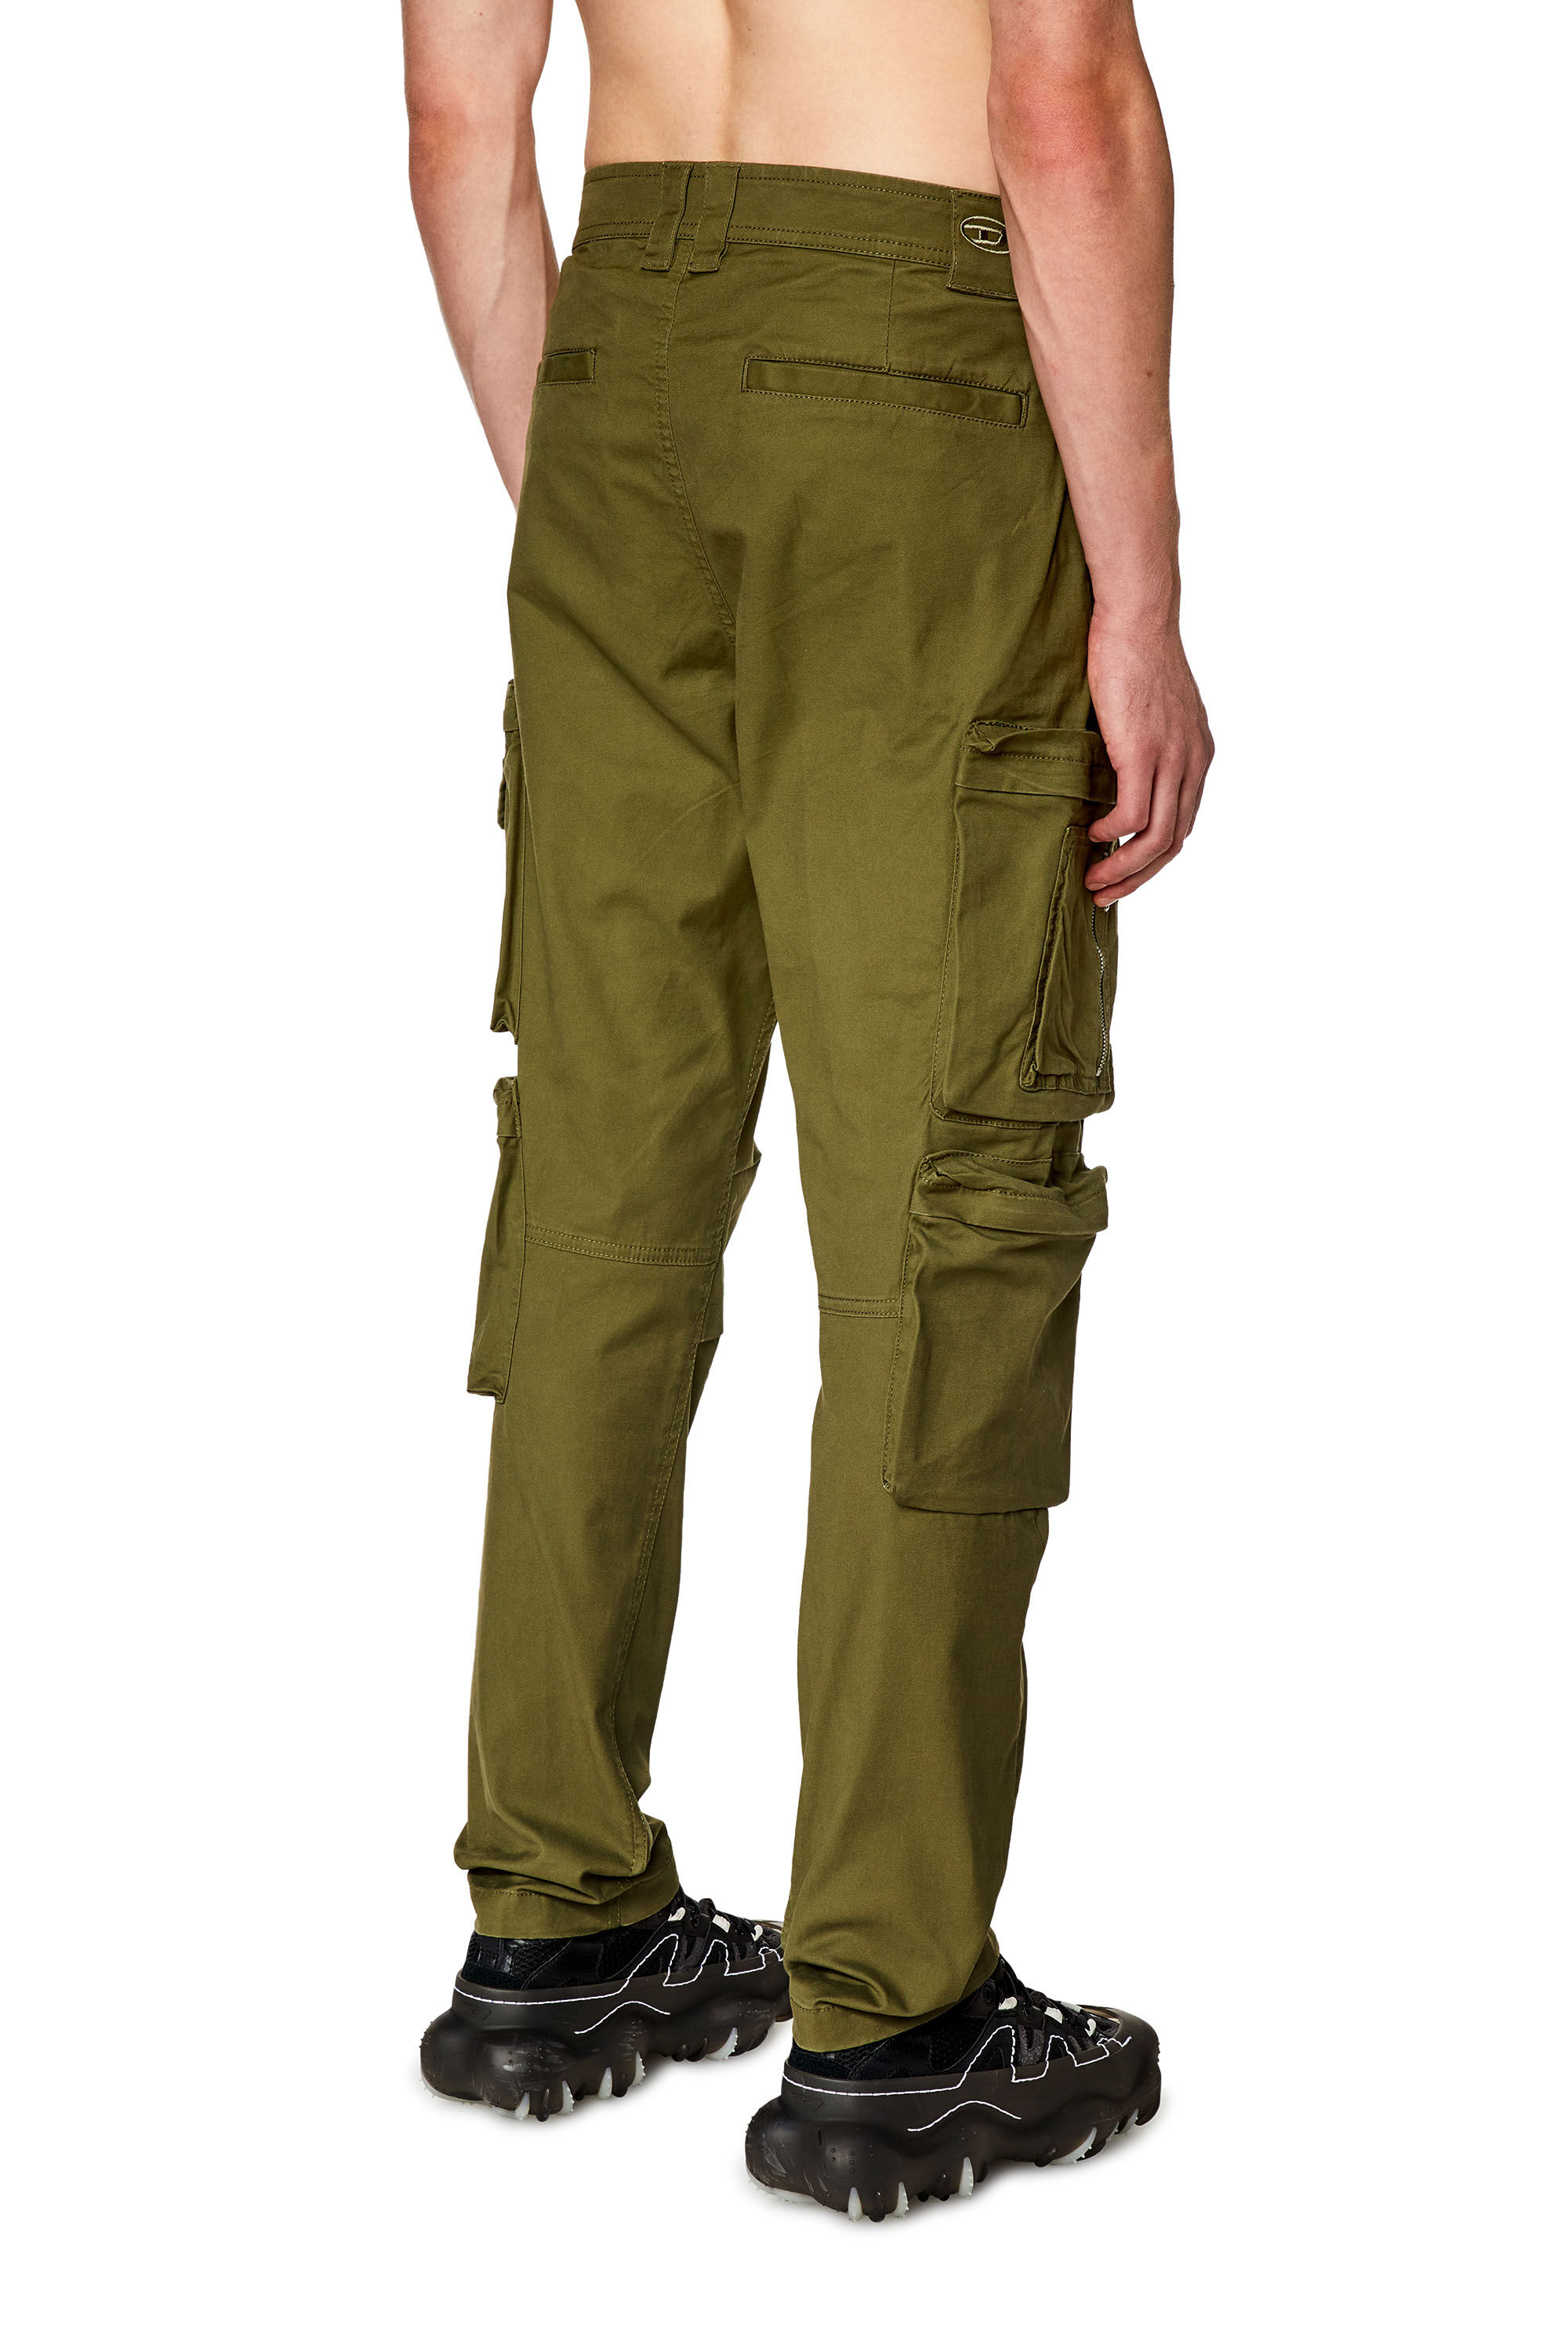 Men's Cargo pants with zip pocket | Green | Diesel